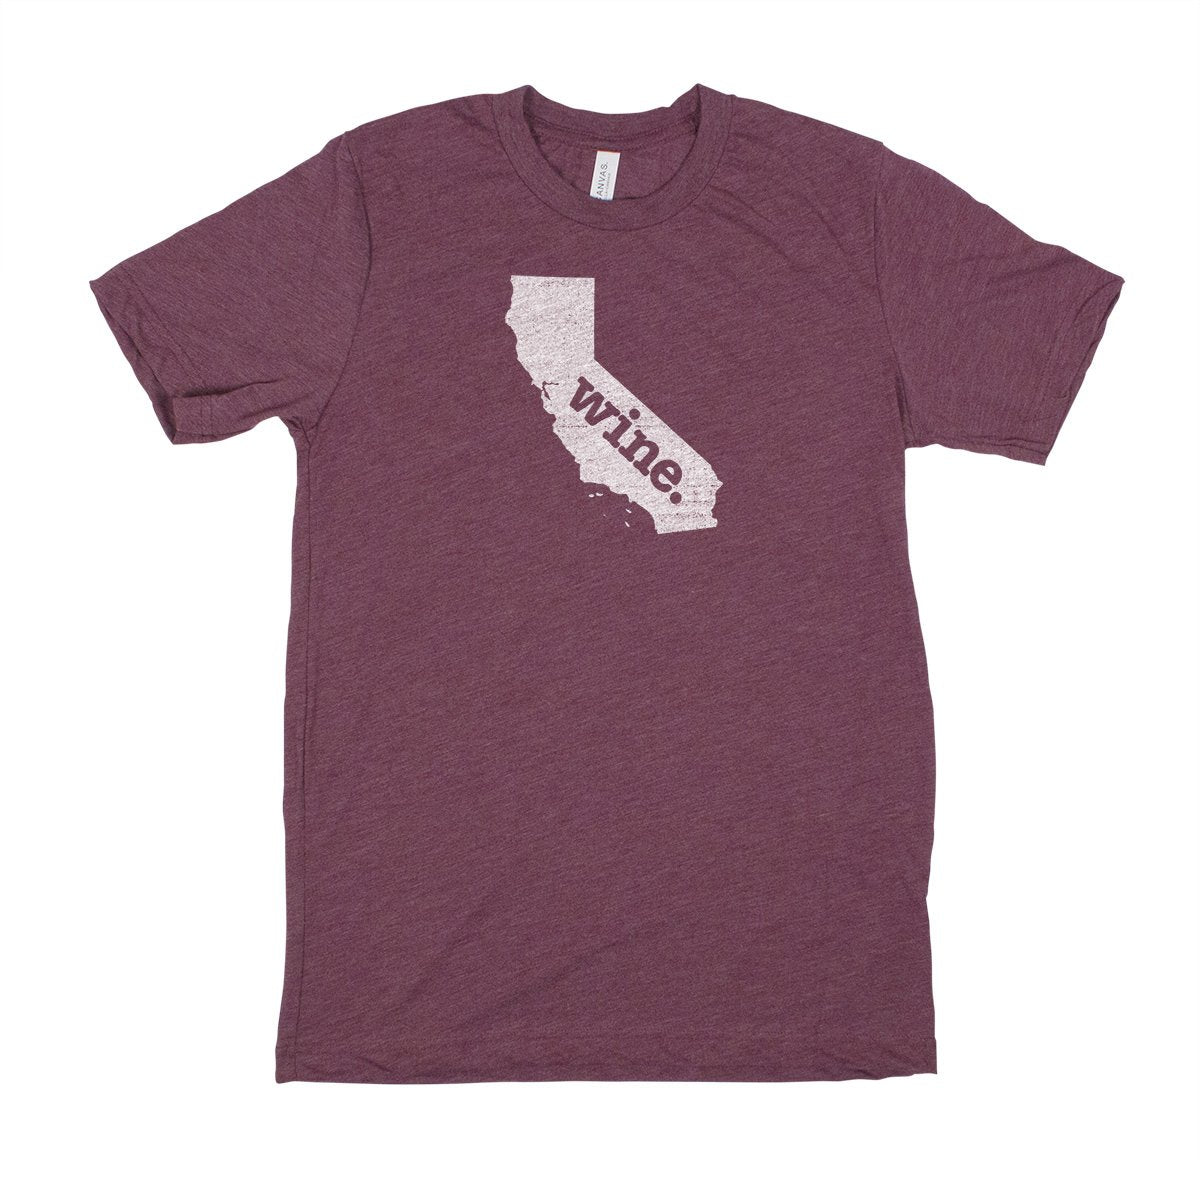 fish. Men's Unisex T-Shirt - North Carolina